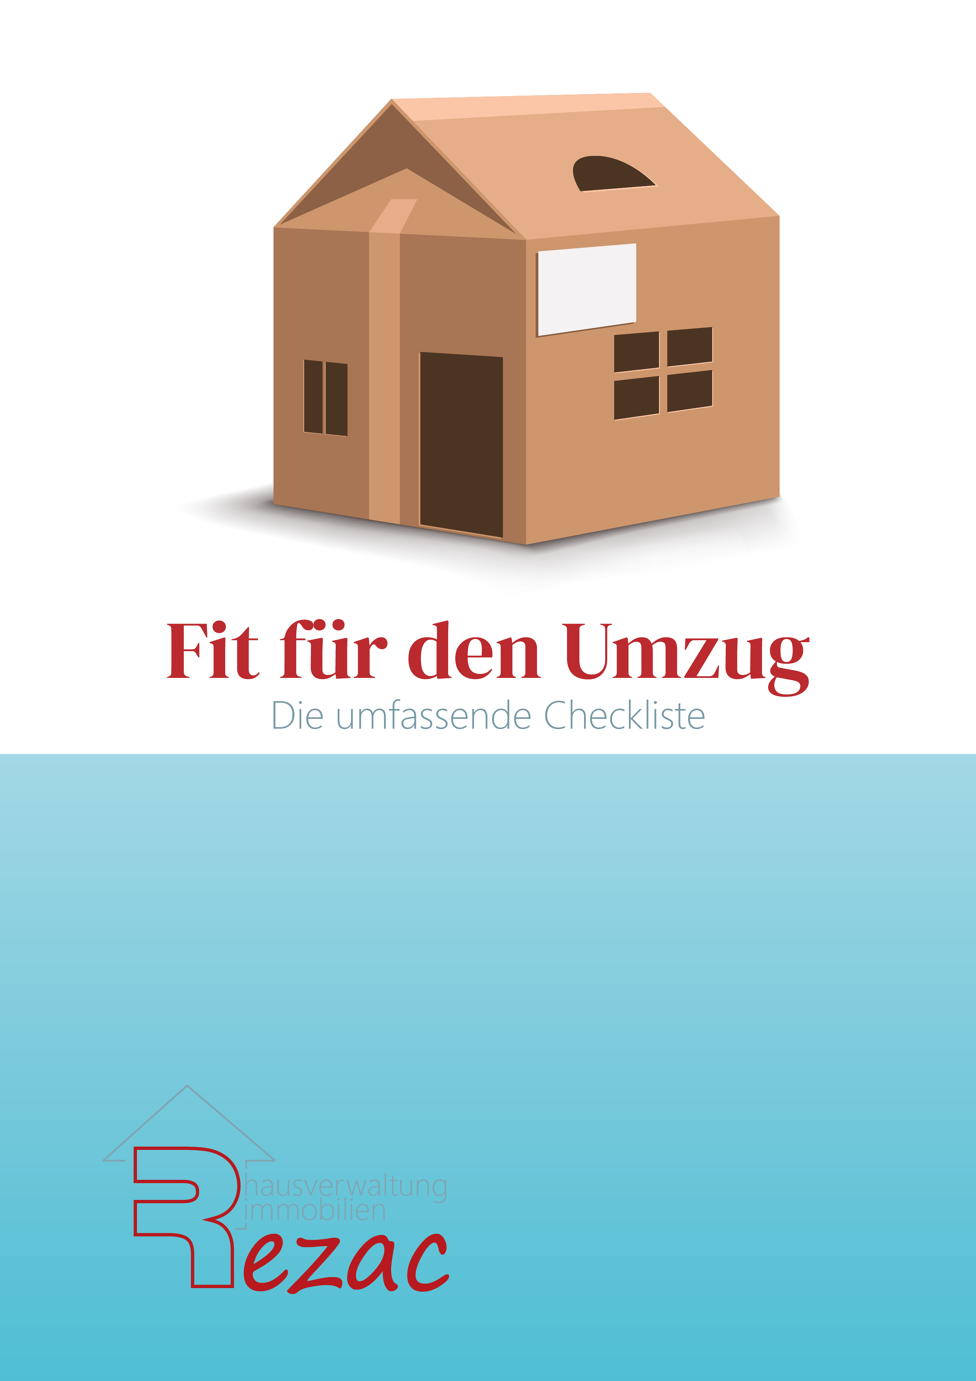 Coverbild des E-Books 'Fit für den Umzug - Die Umfassende Checkliste' von Rezac